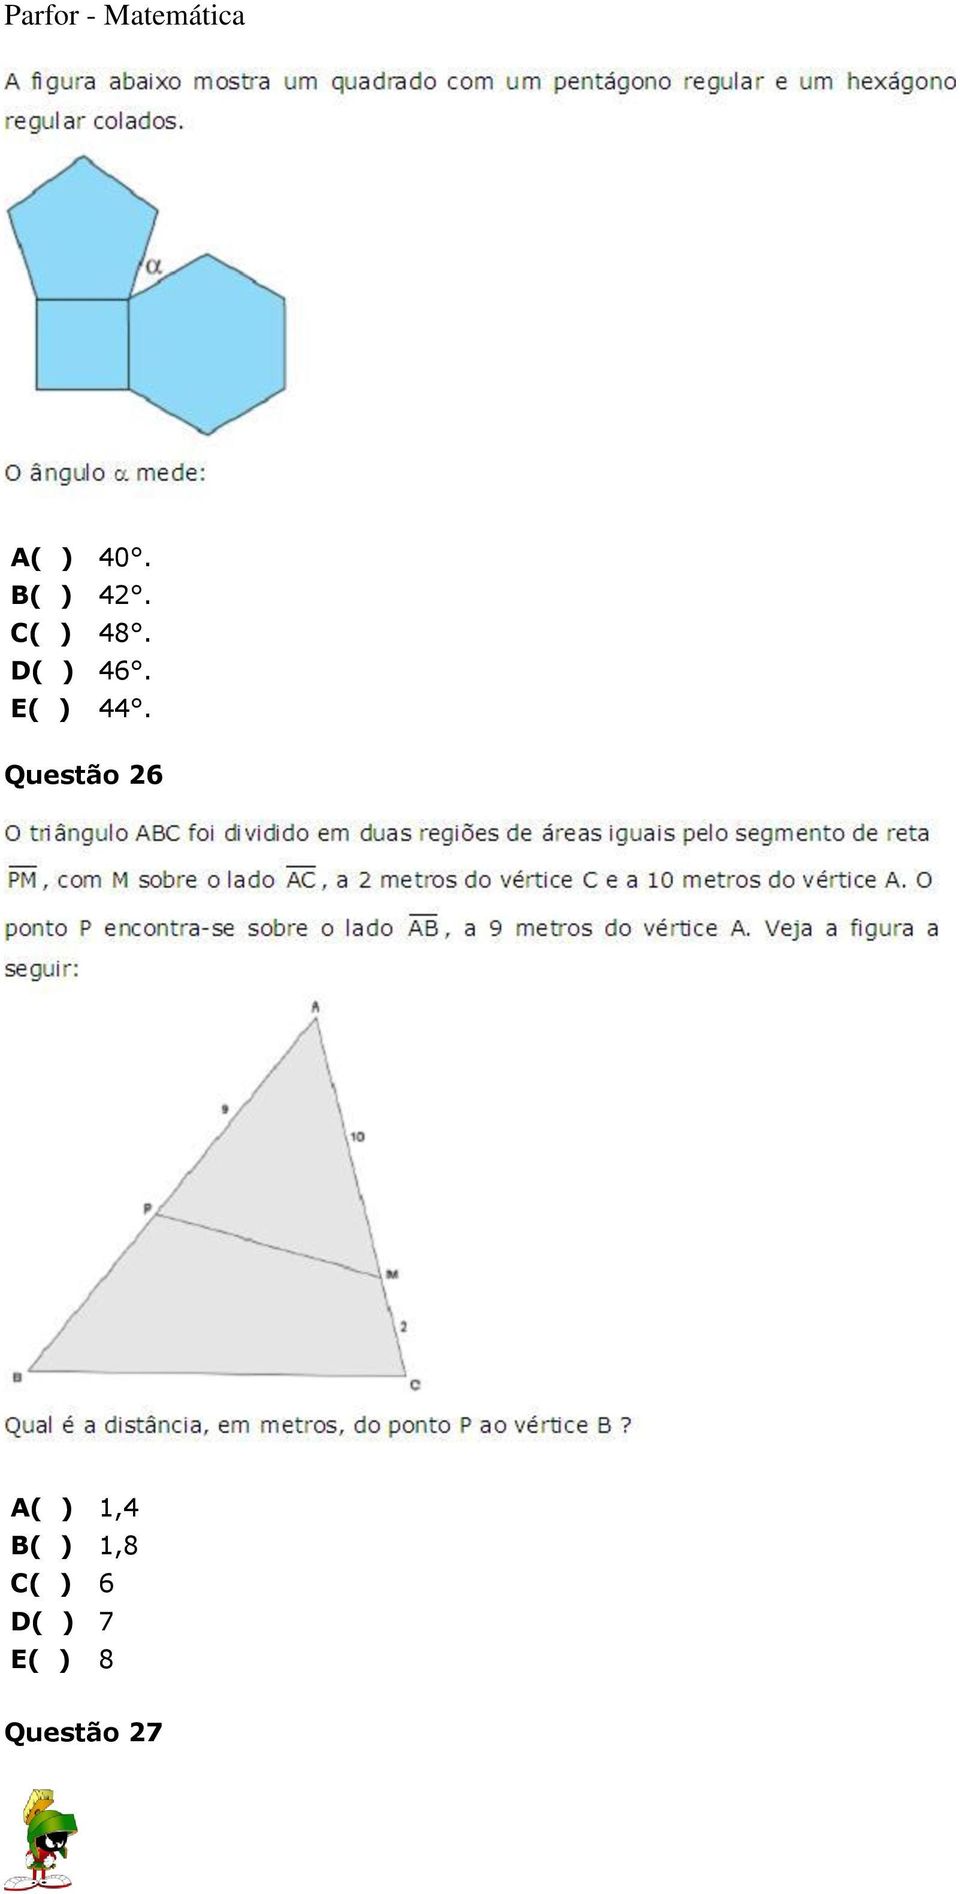 Questão 26 A( ) 1,4 B( )